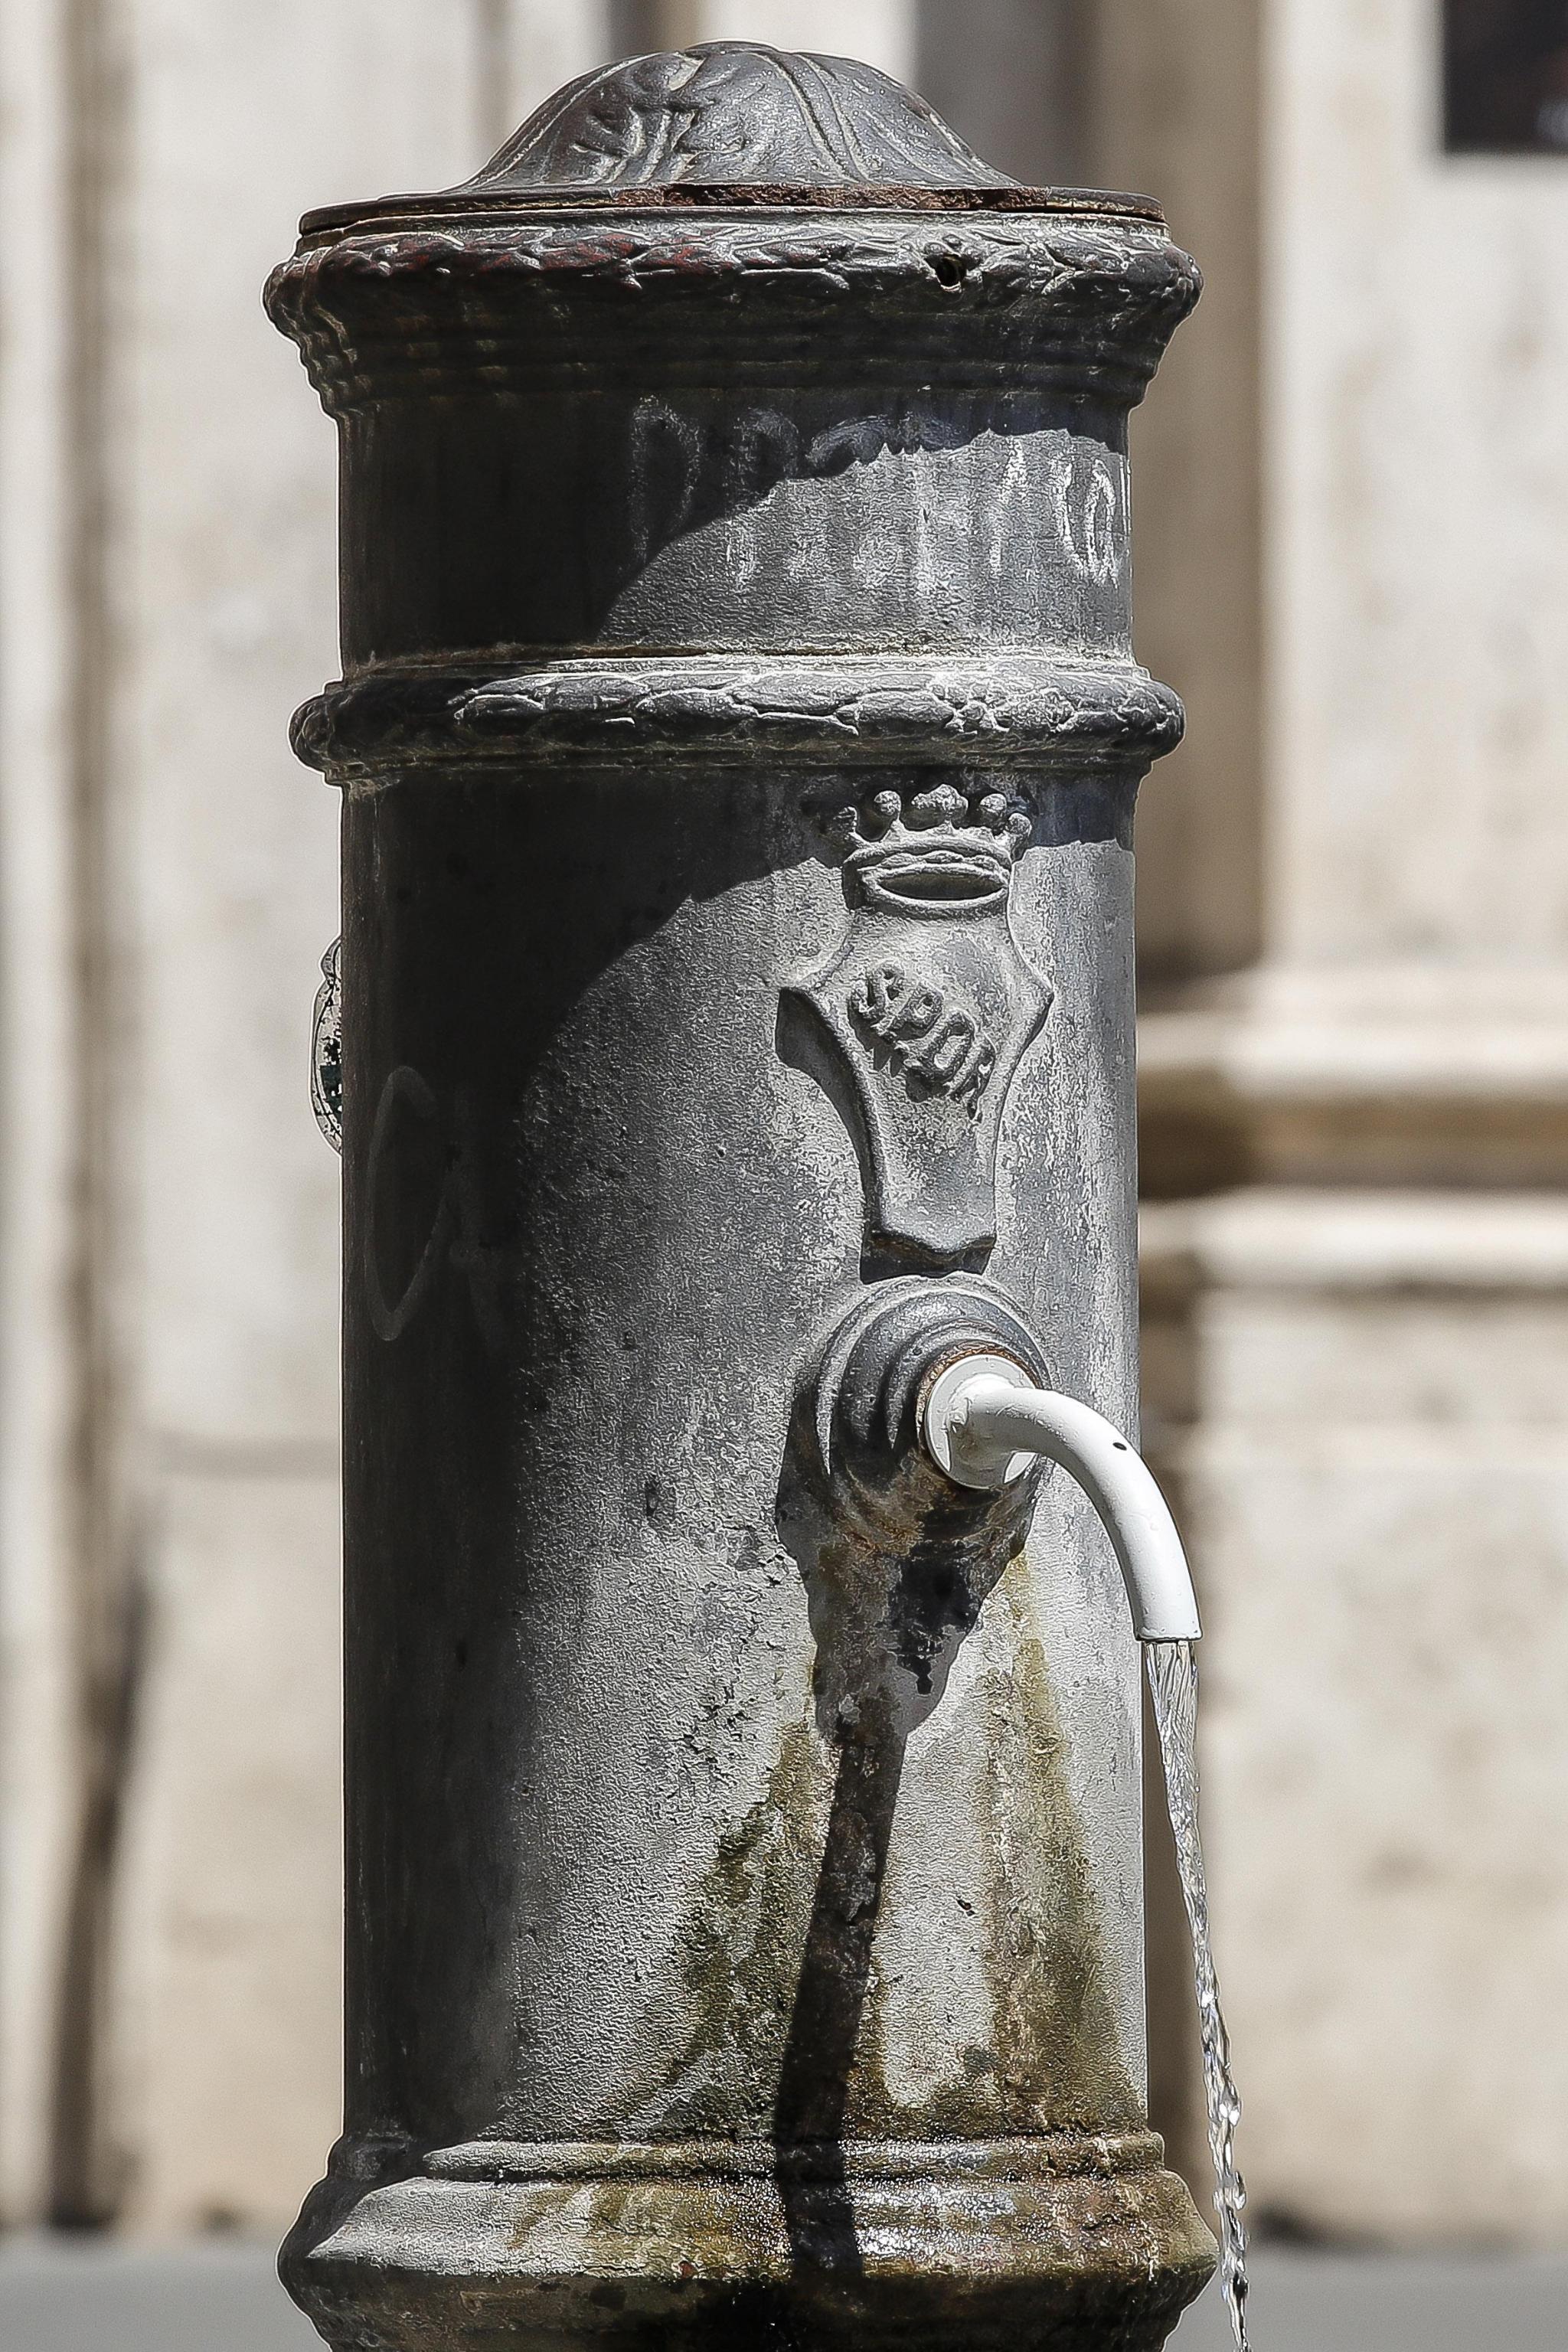 Una delle fontanelle pubbliche di Roma, meglio note come ''nasoni'', per le quali la giunta comunale guidata da Virginia Raggi sta valutando l'ipotesi di una chiusura parziale o totale a causa della siccità e dell'emergenza idrica. Roma, 26 giugno 2017. ANSA/GIUSEPPE LAMI